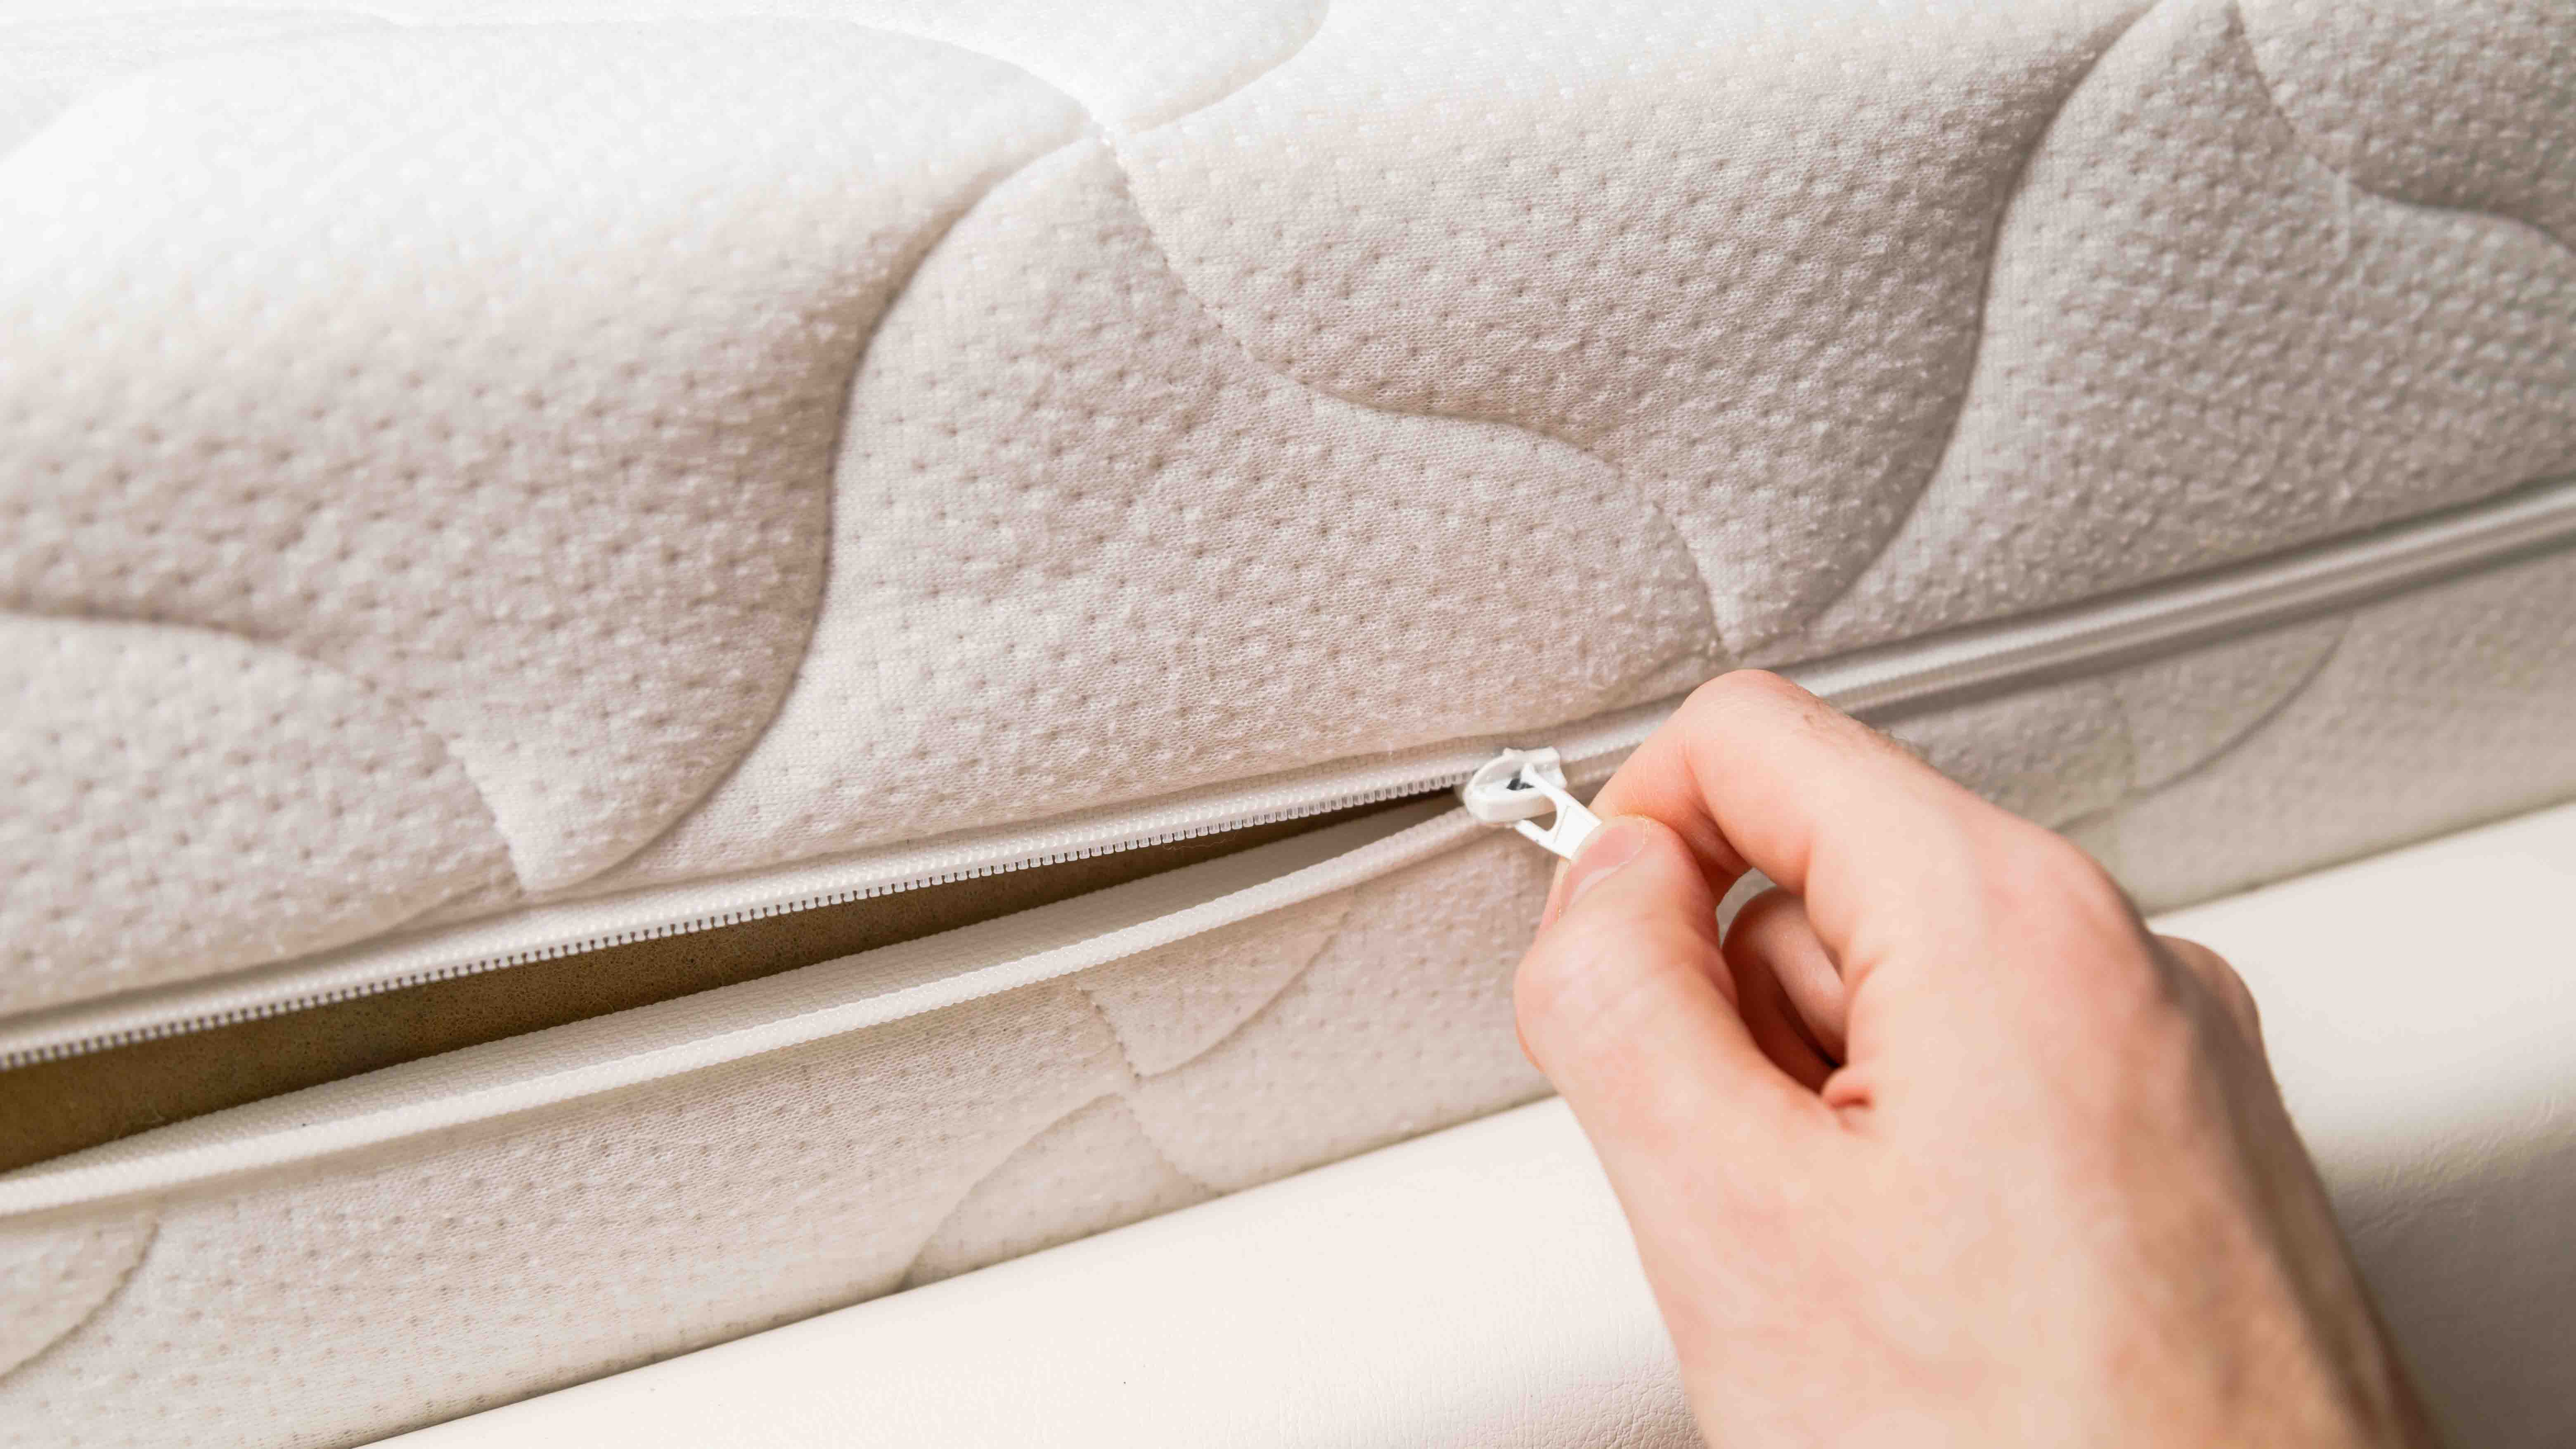 Hand opening the zip of a mattress